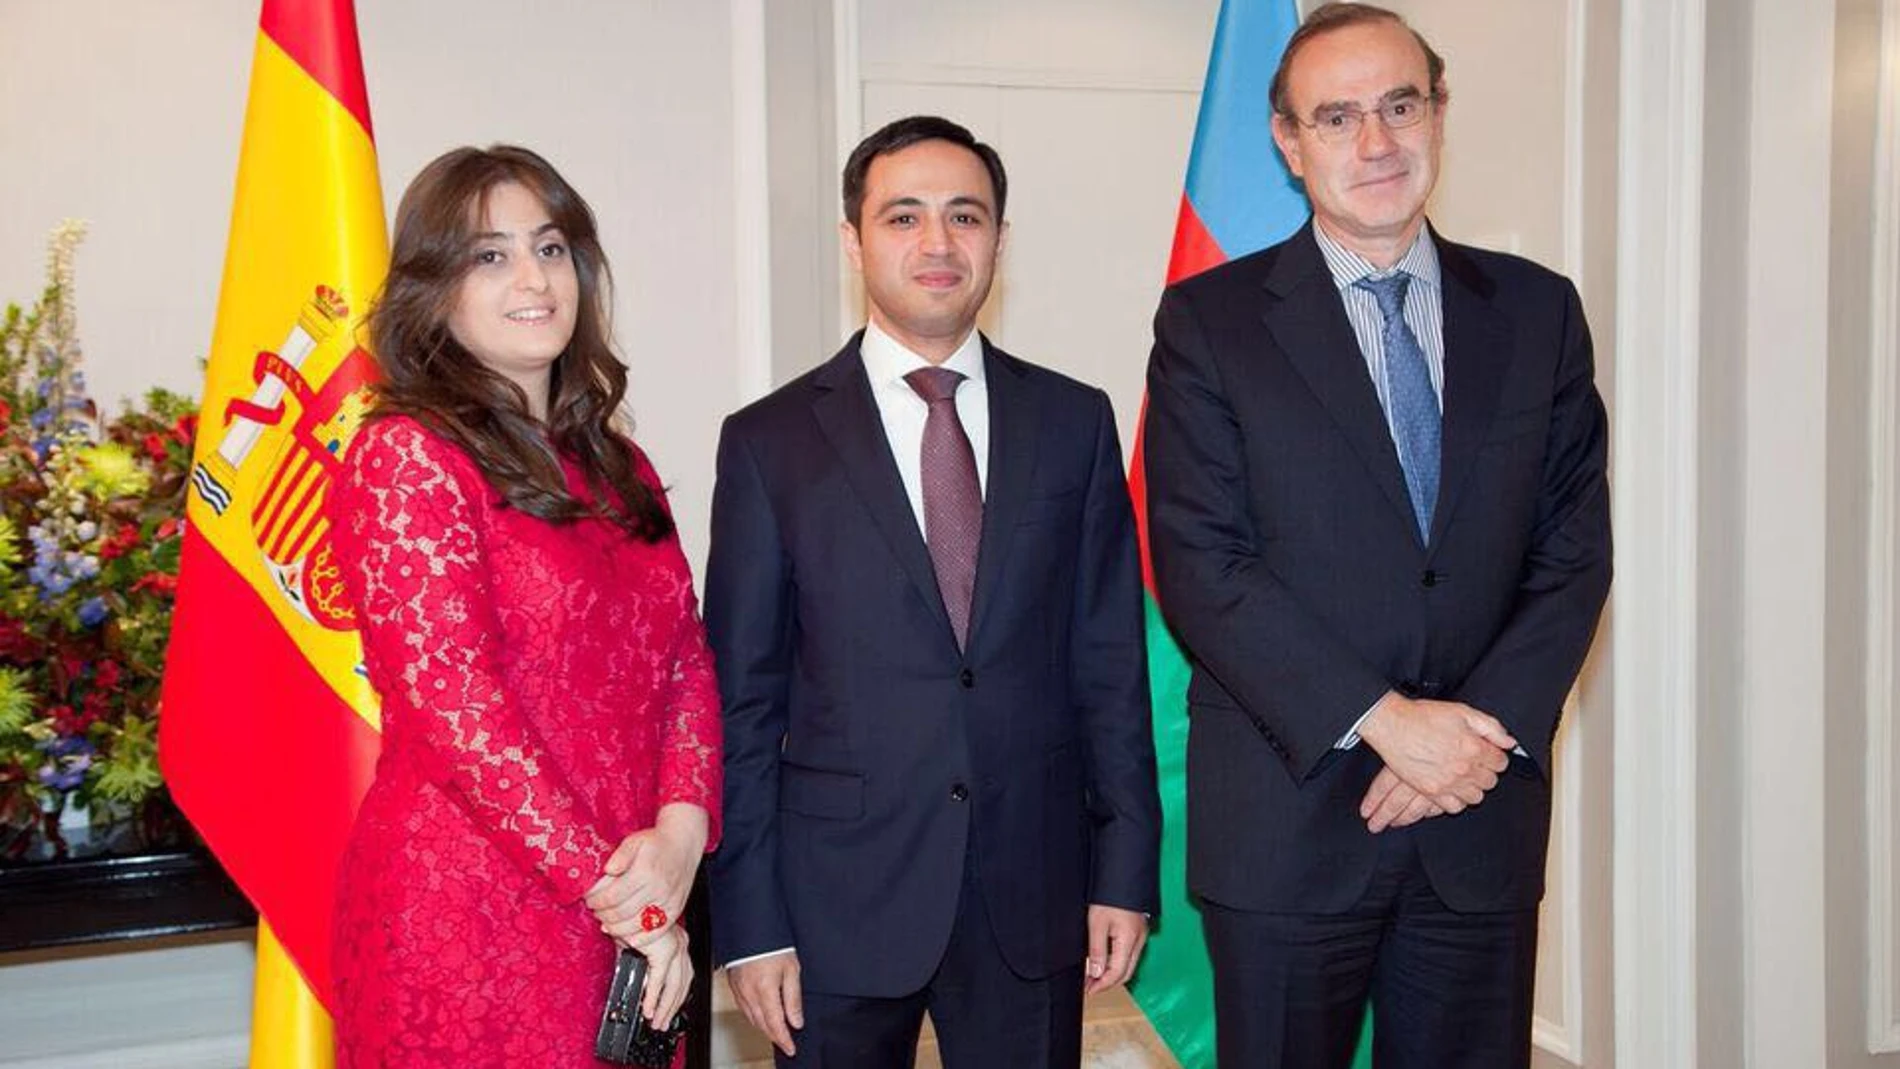 En la imagen, en el centro, el embajador Anar Maharramov, a su izquierda su señora Mehriban Maharramova y a su derecha el embajador Enrique Mora Benavente